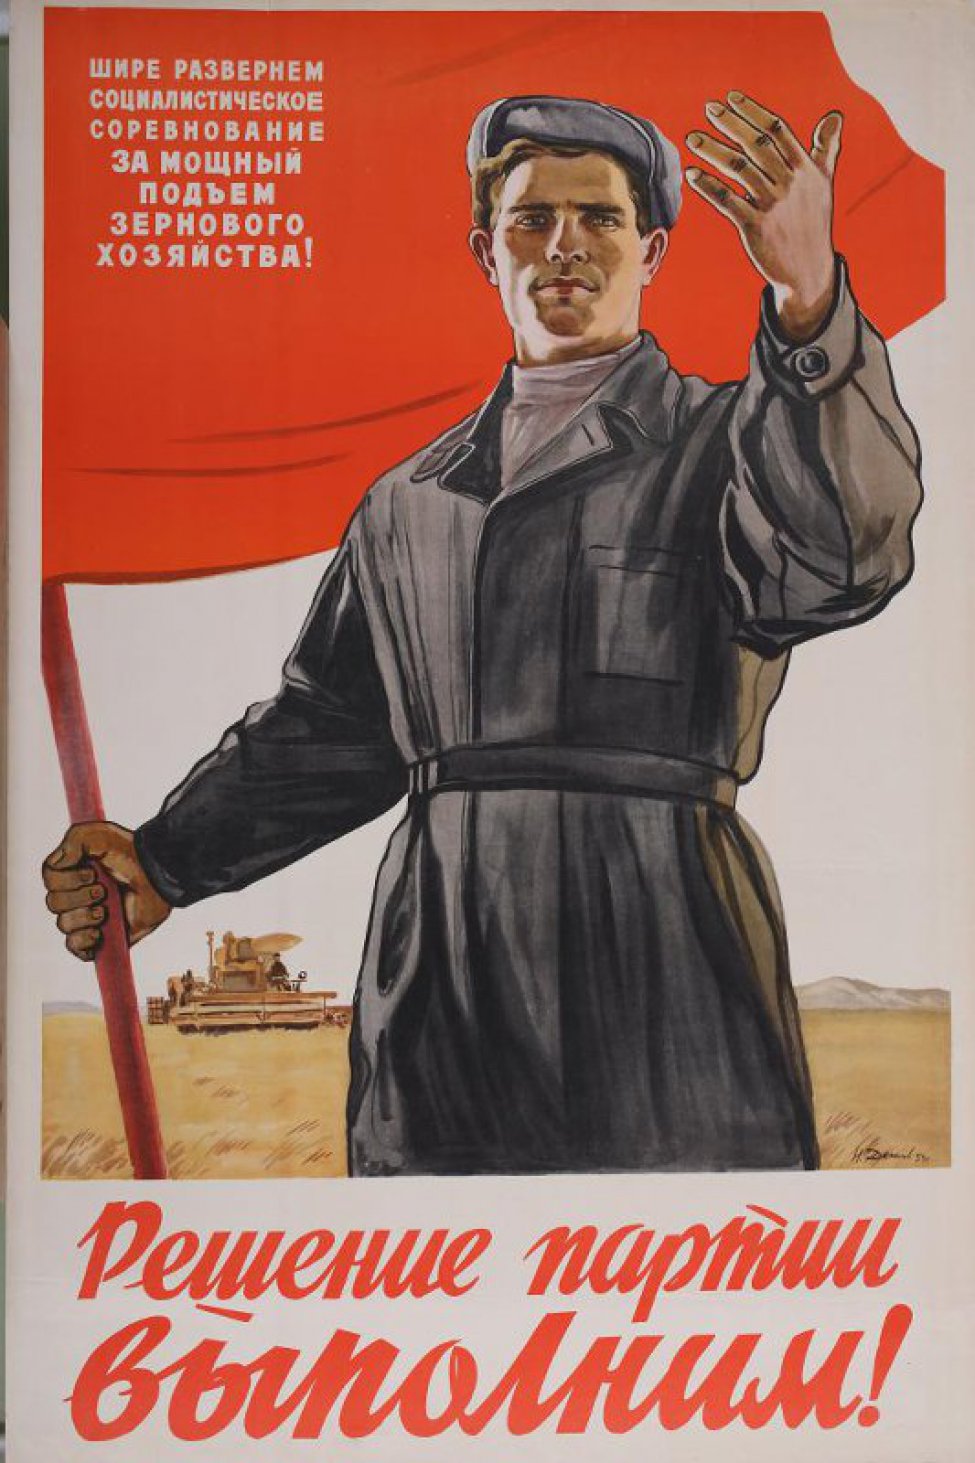 Изображен мужчина-комбайнер в поле со знаменем в руках. На знамени надпись: "Шире развернем социалистическое соревнование за мощный подьем зернового хозяйства."